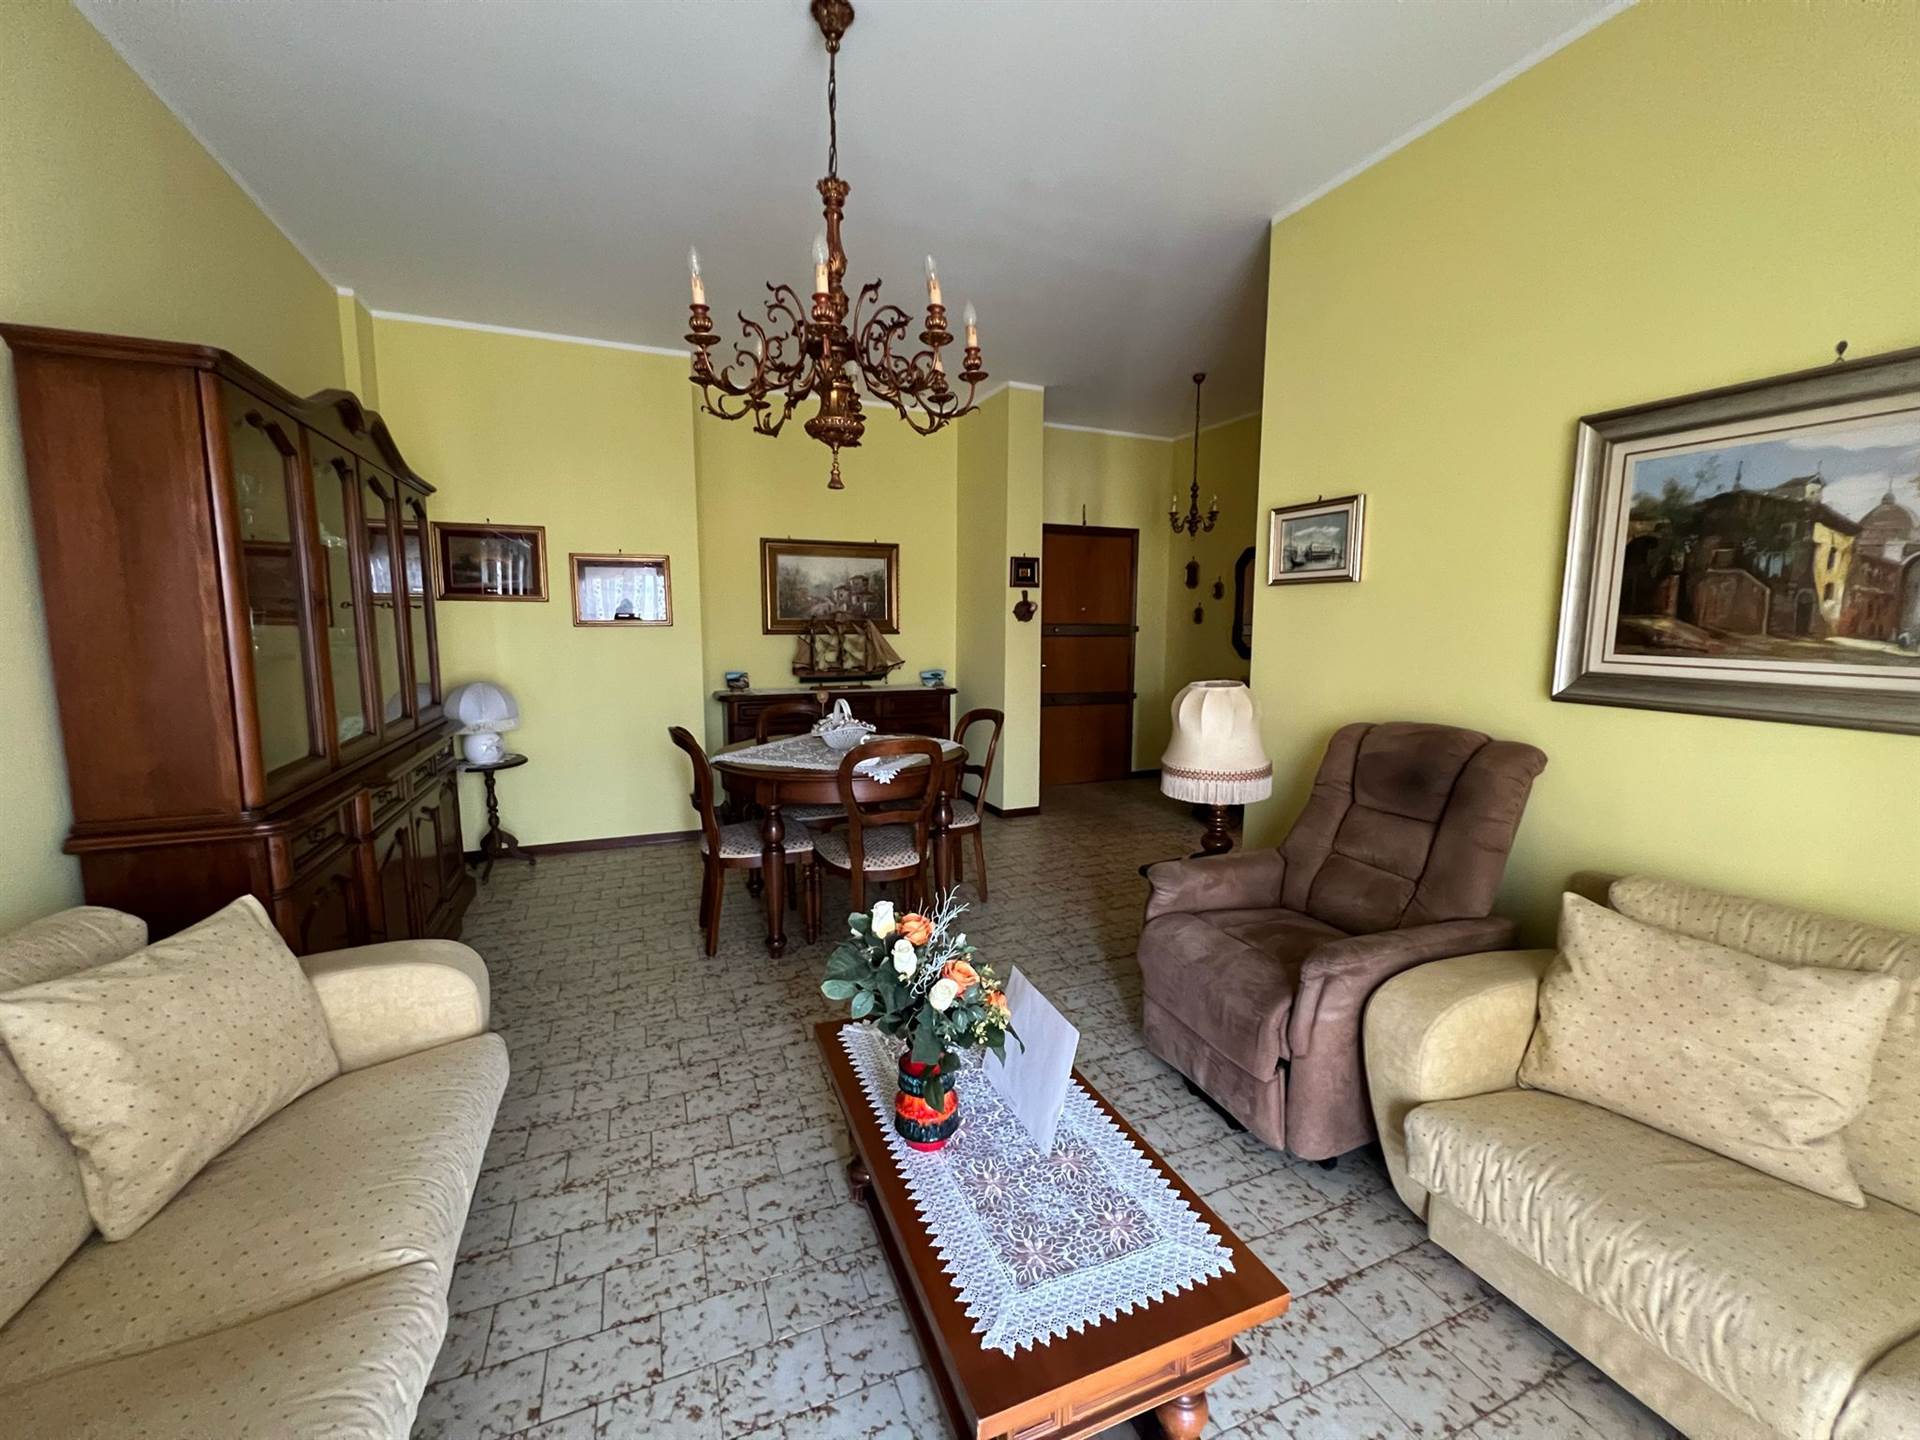 Appartamento in vendita a Mortara, 2 locali, prezzo € 58.000 | PortaleAgenzieImmobiliari.it